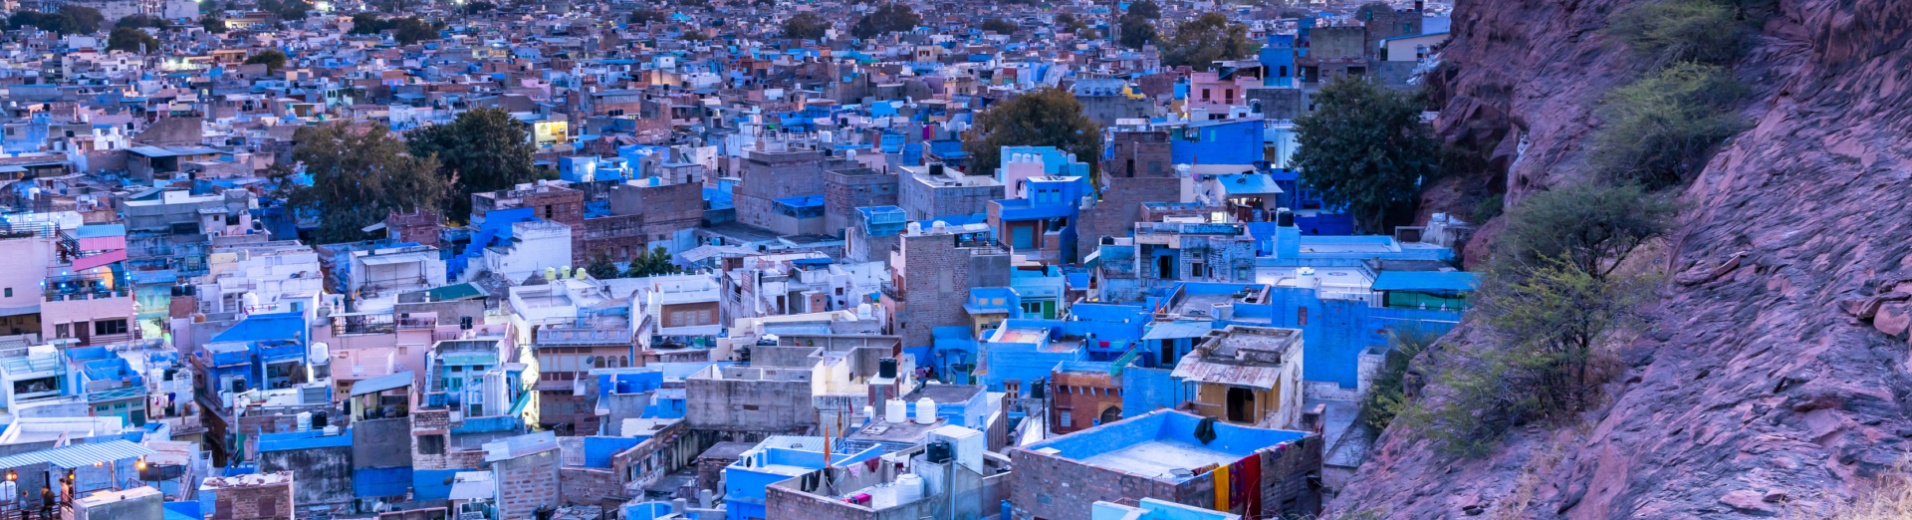 ville-bleue-jodhpur